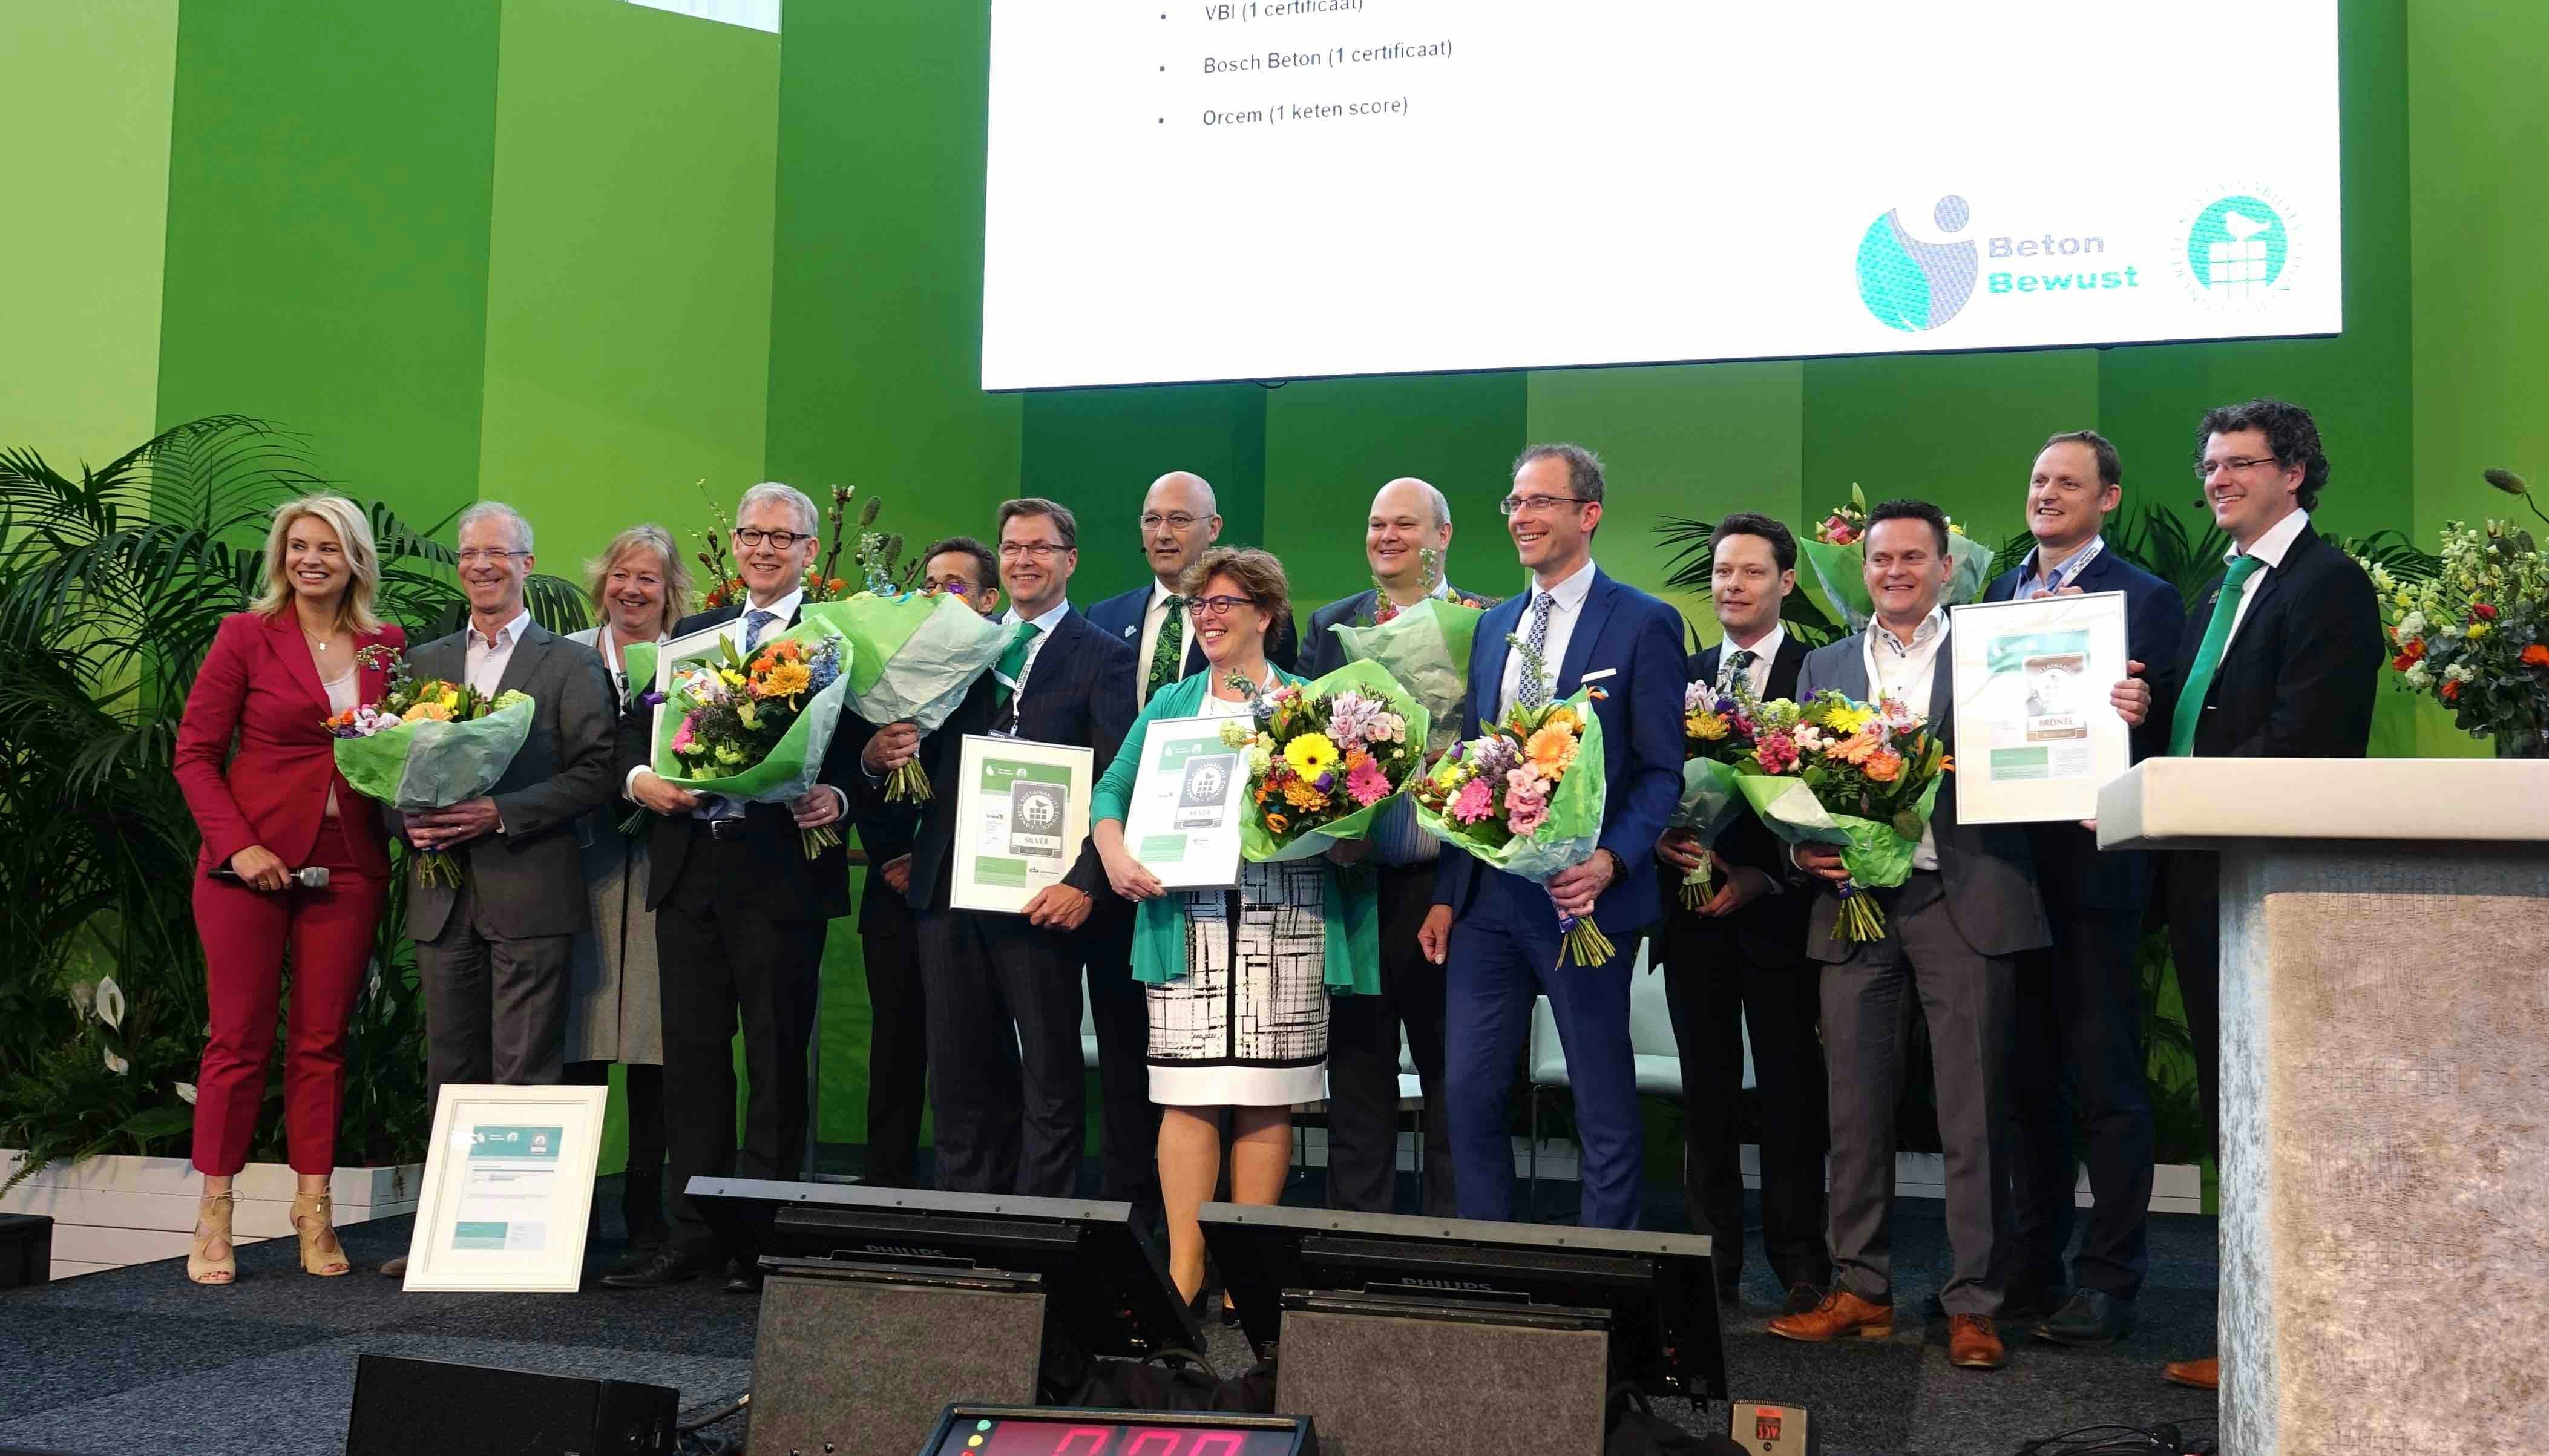 Vijf certificaten uitgereikt voor duurzaam beton